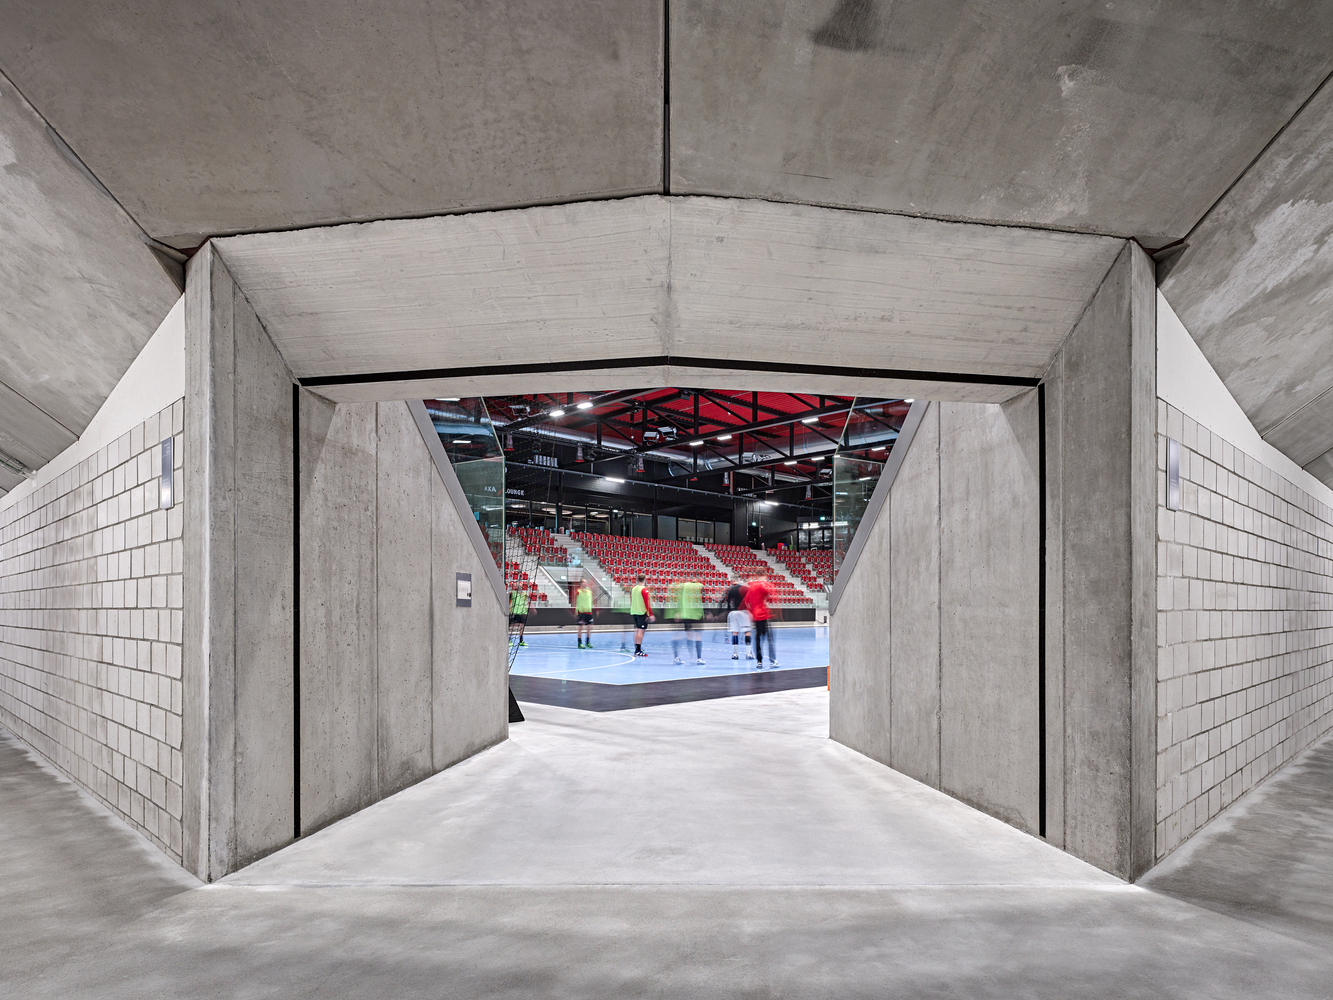 瑞士WIM4体育中心建筑设计/EM2N